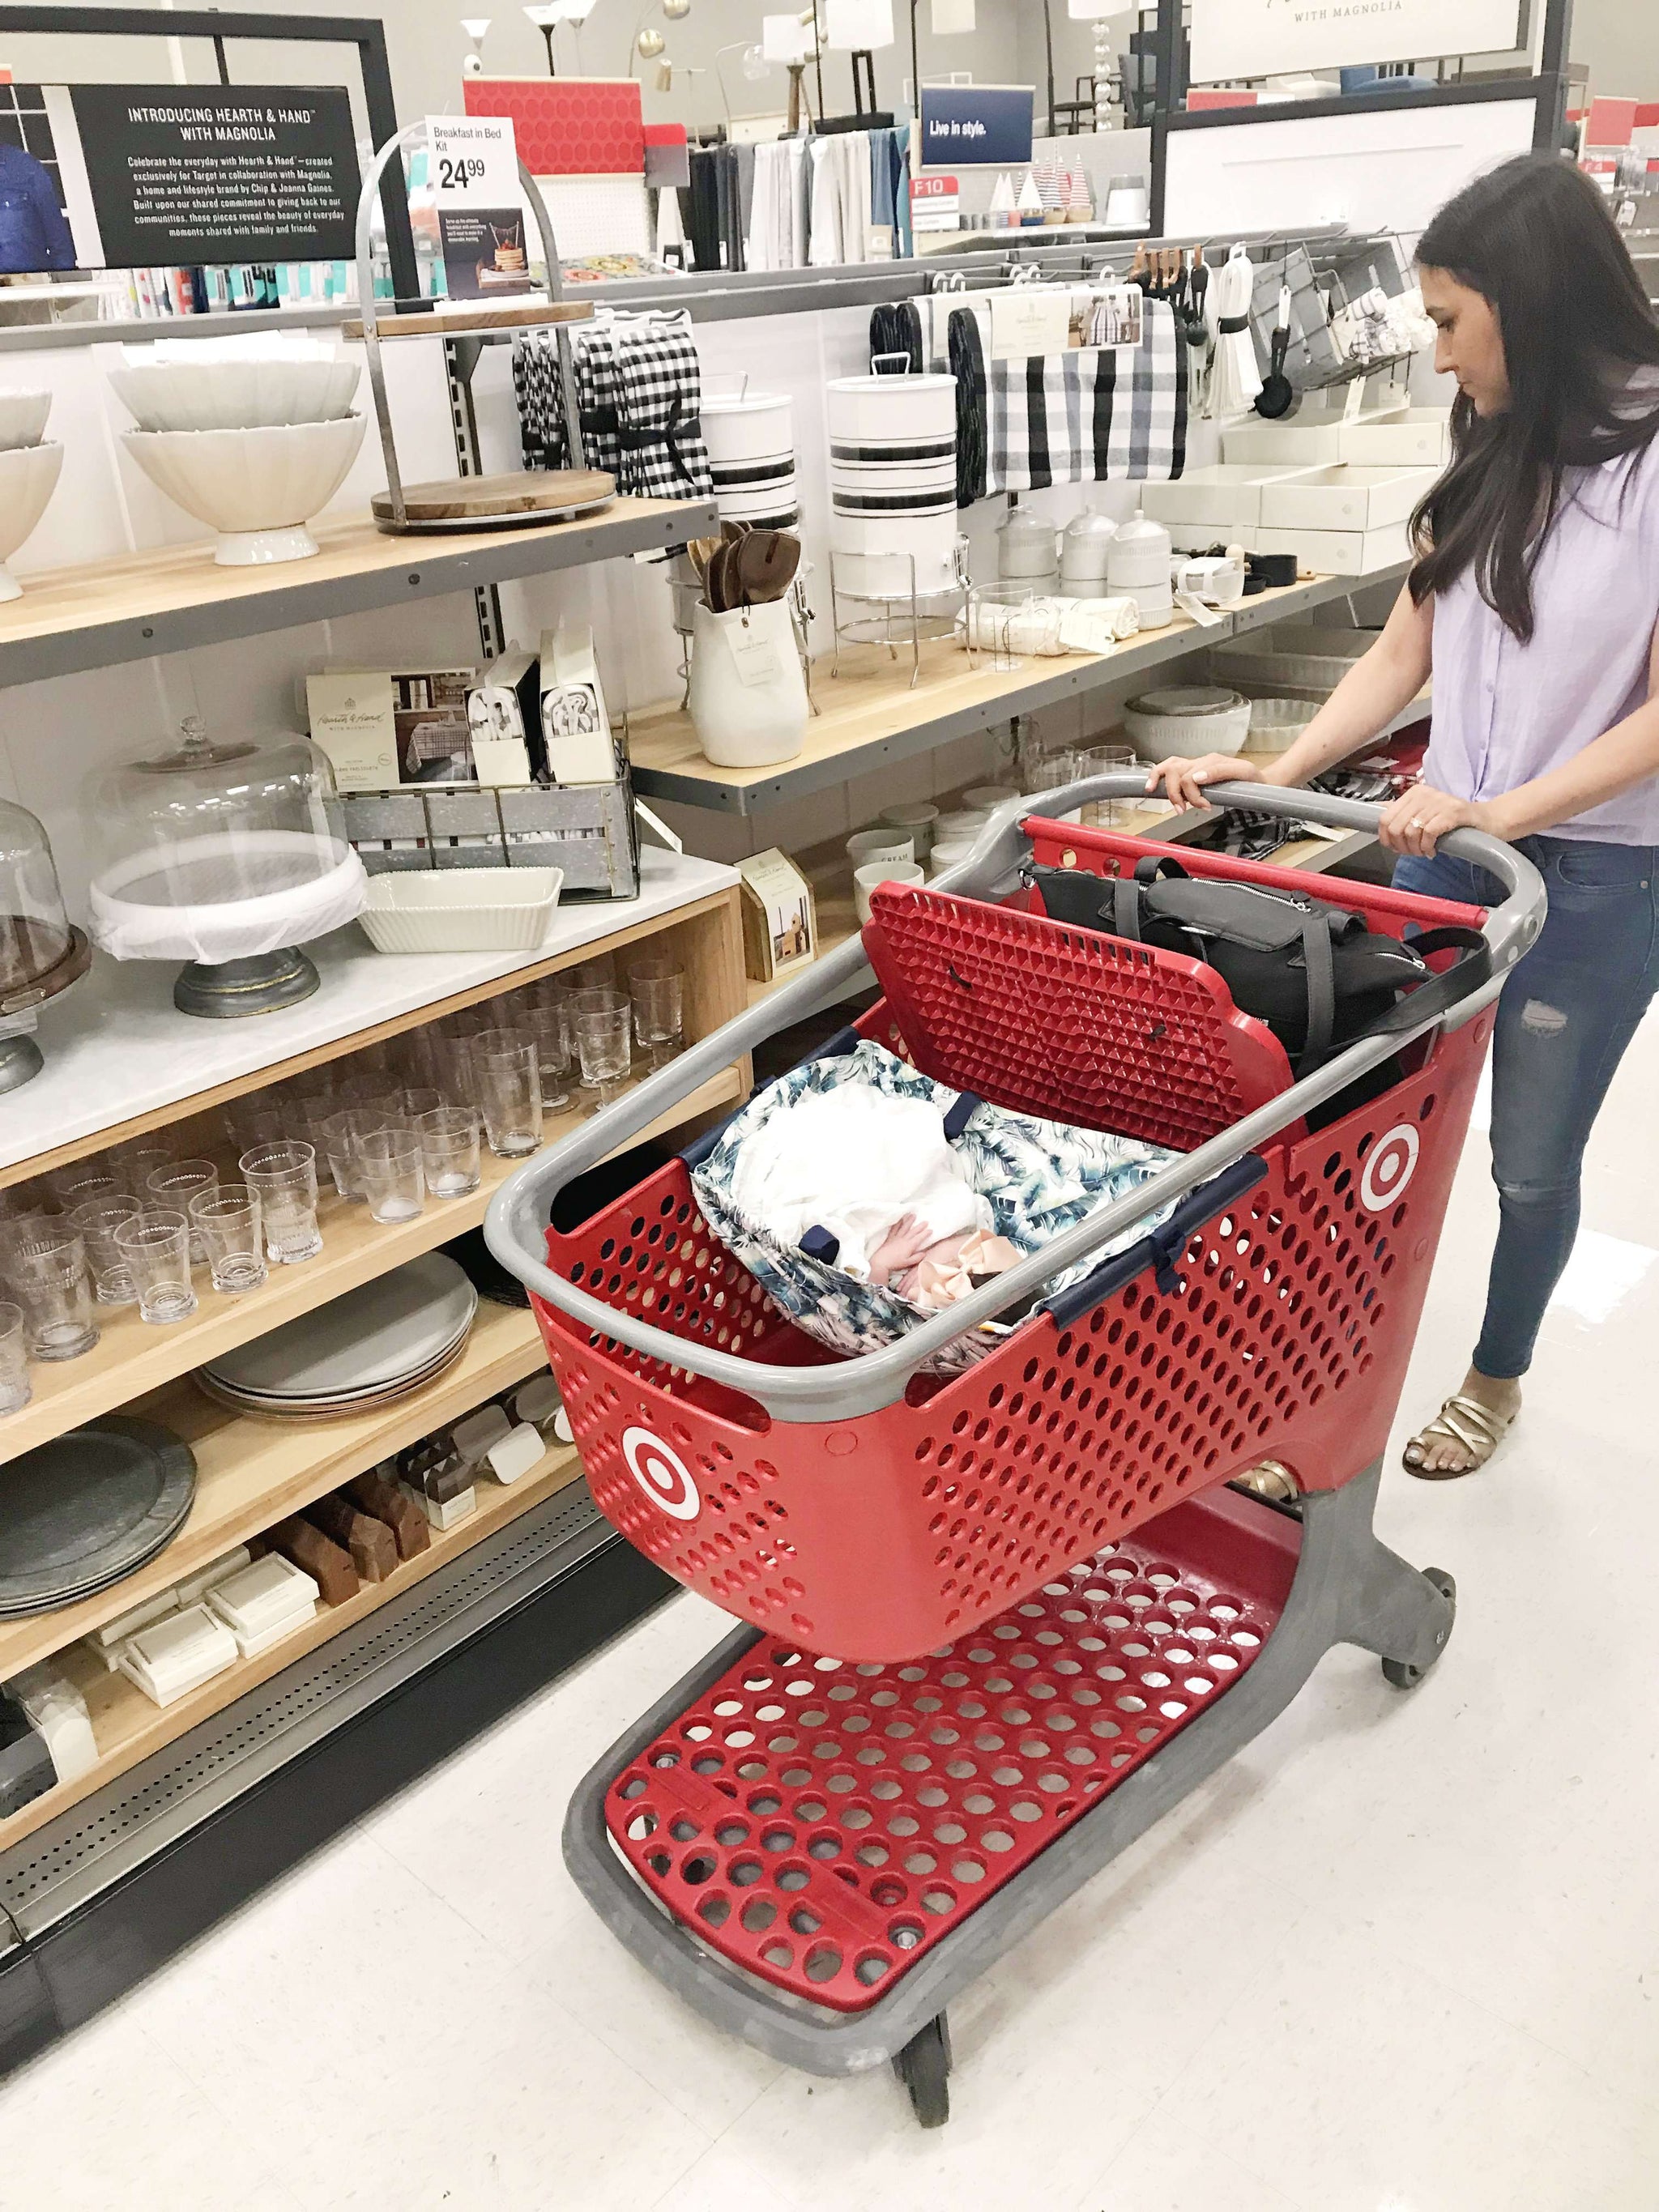 target shopping cart baby